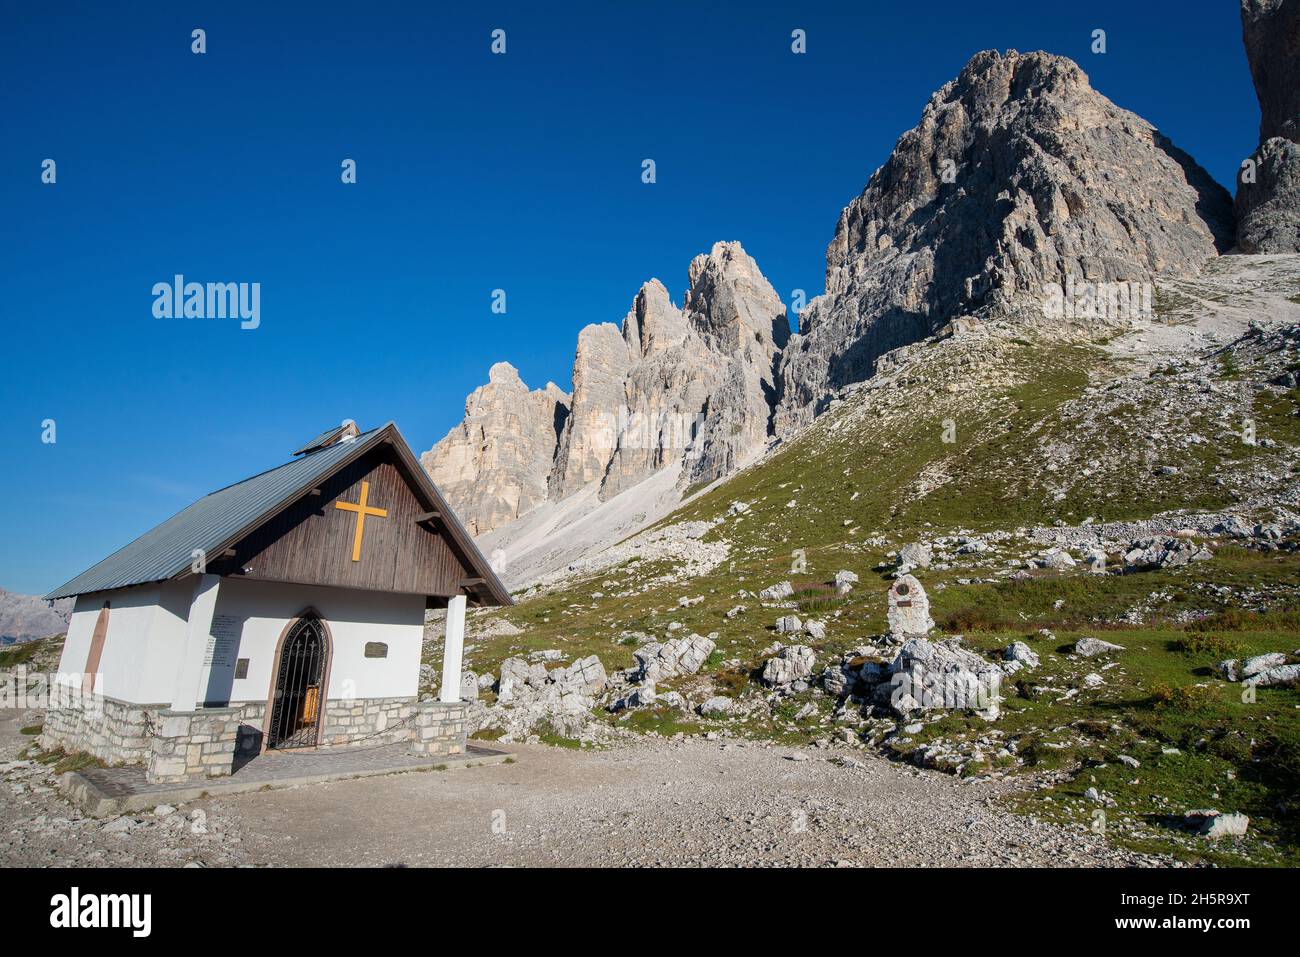 Cappella degli alpini, Italy Stock Photo